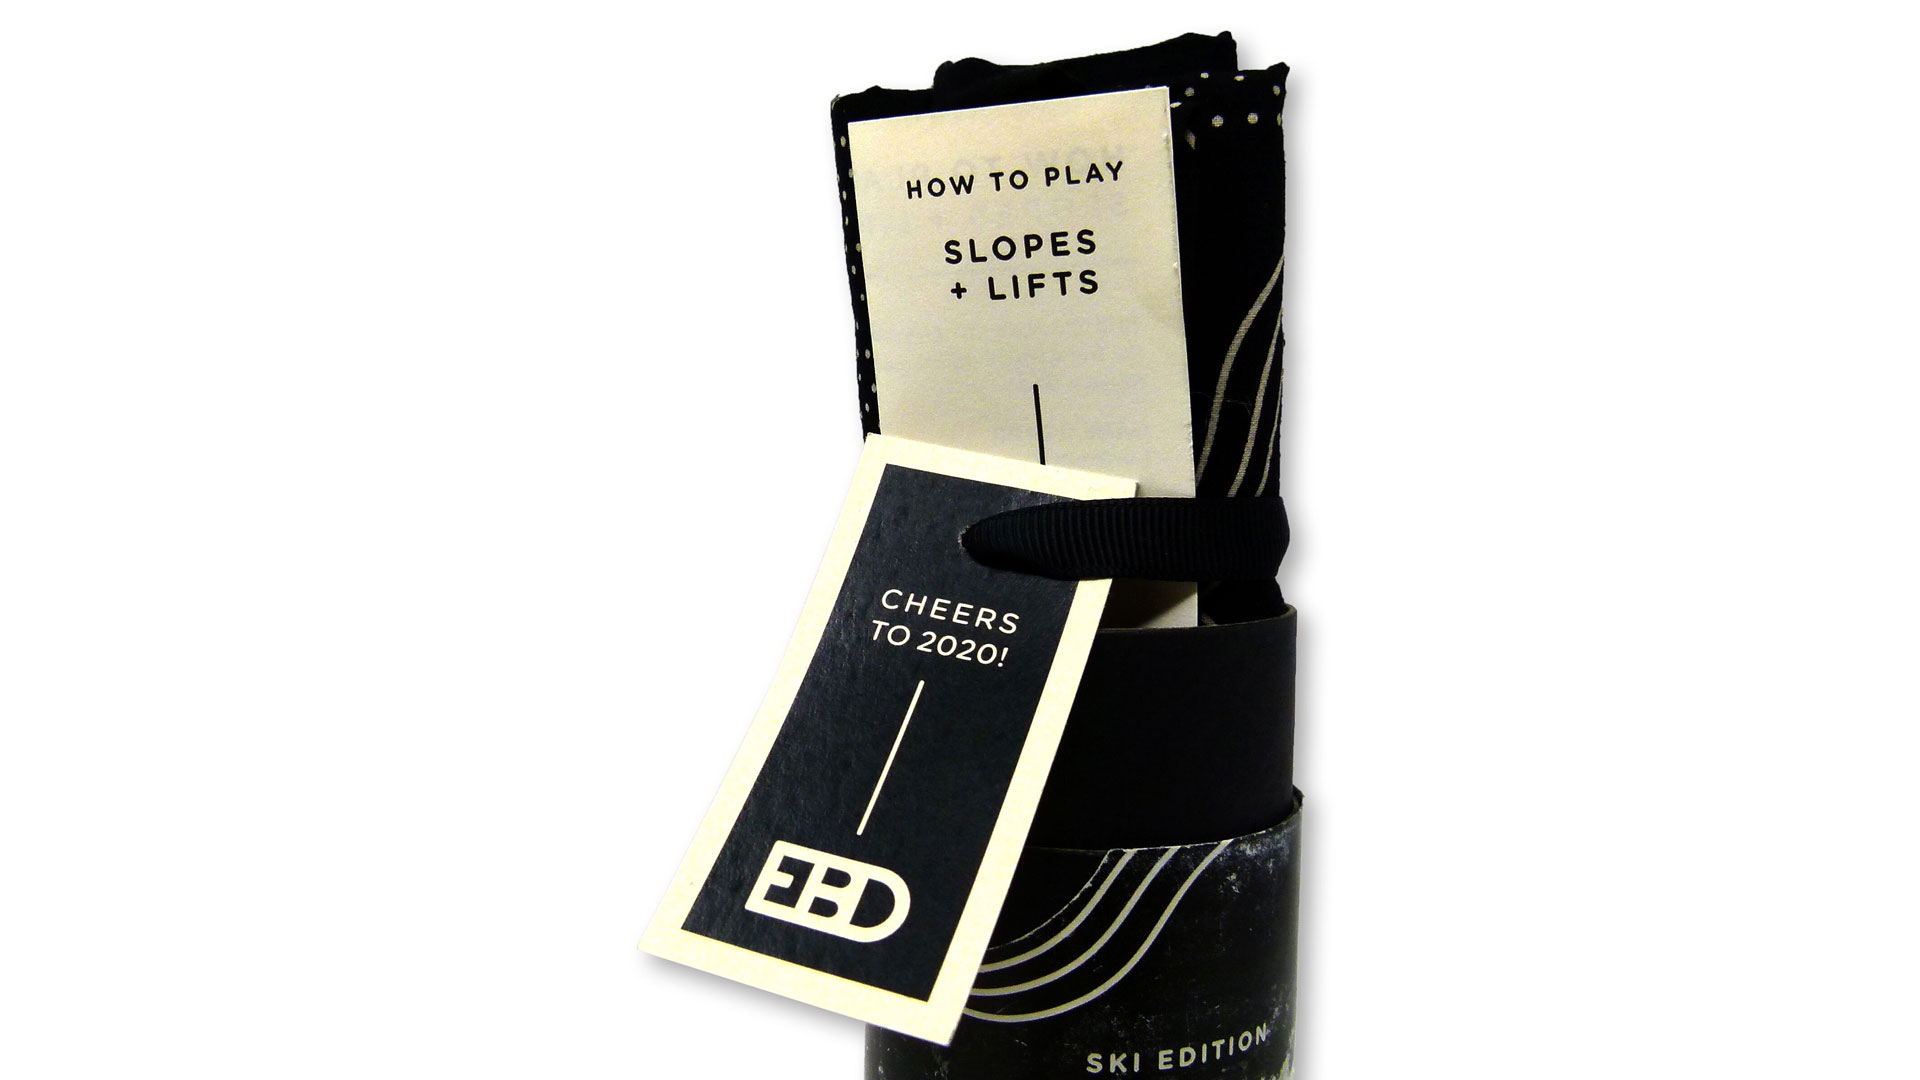 Slopes + Lifts Game by Ellen Bruss Design (EBD) - PaperSpecs